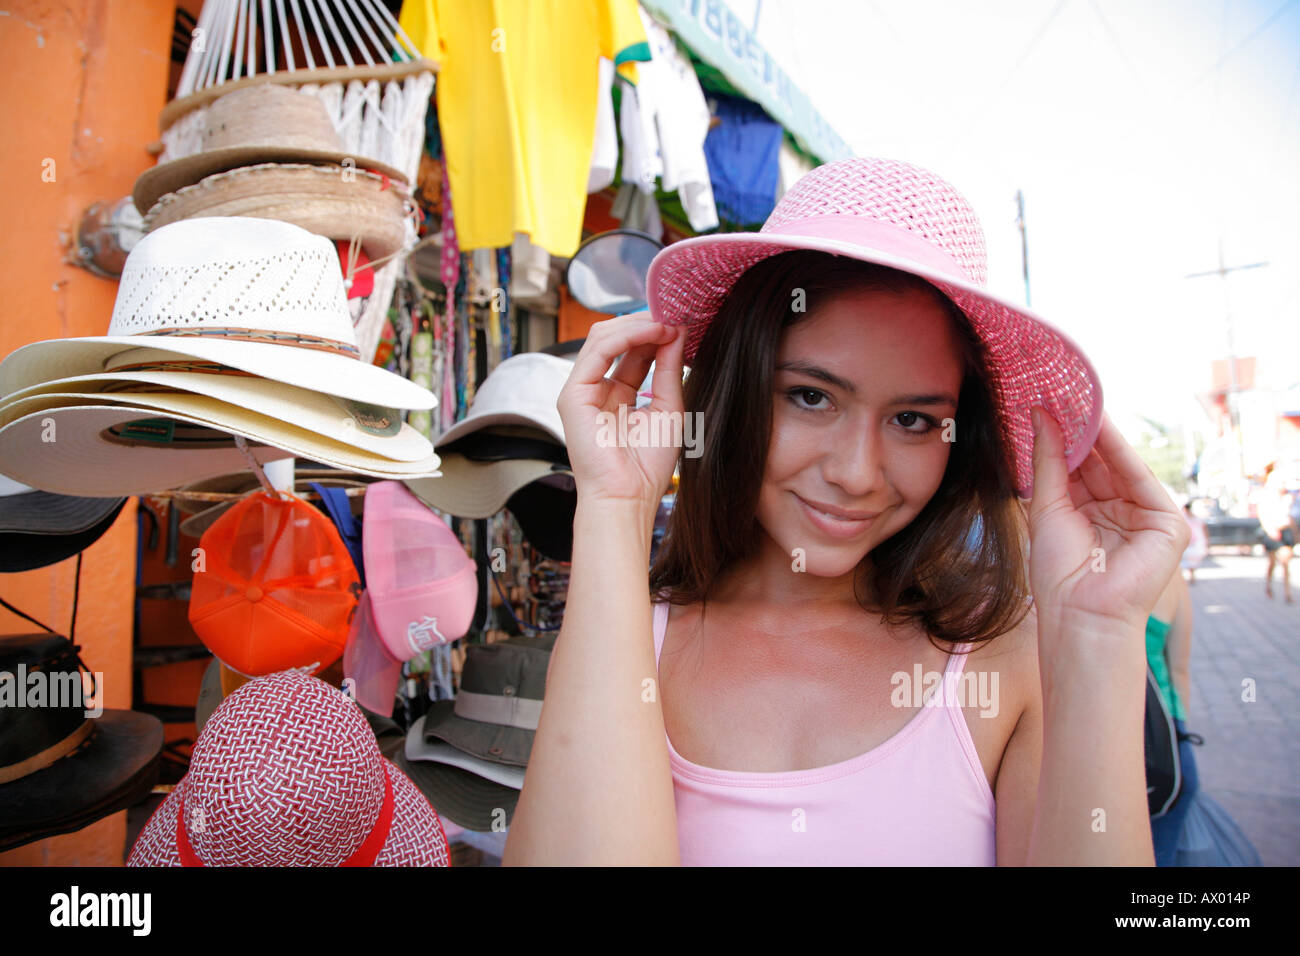 Mujer joven shopping hat, tienda de souvenirs, Isla Mujeres, Cancún, México. Señor-03-05-2008 Foto de stock